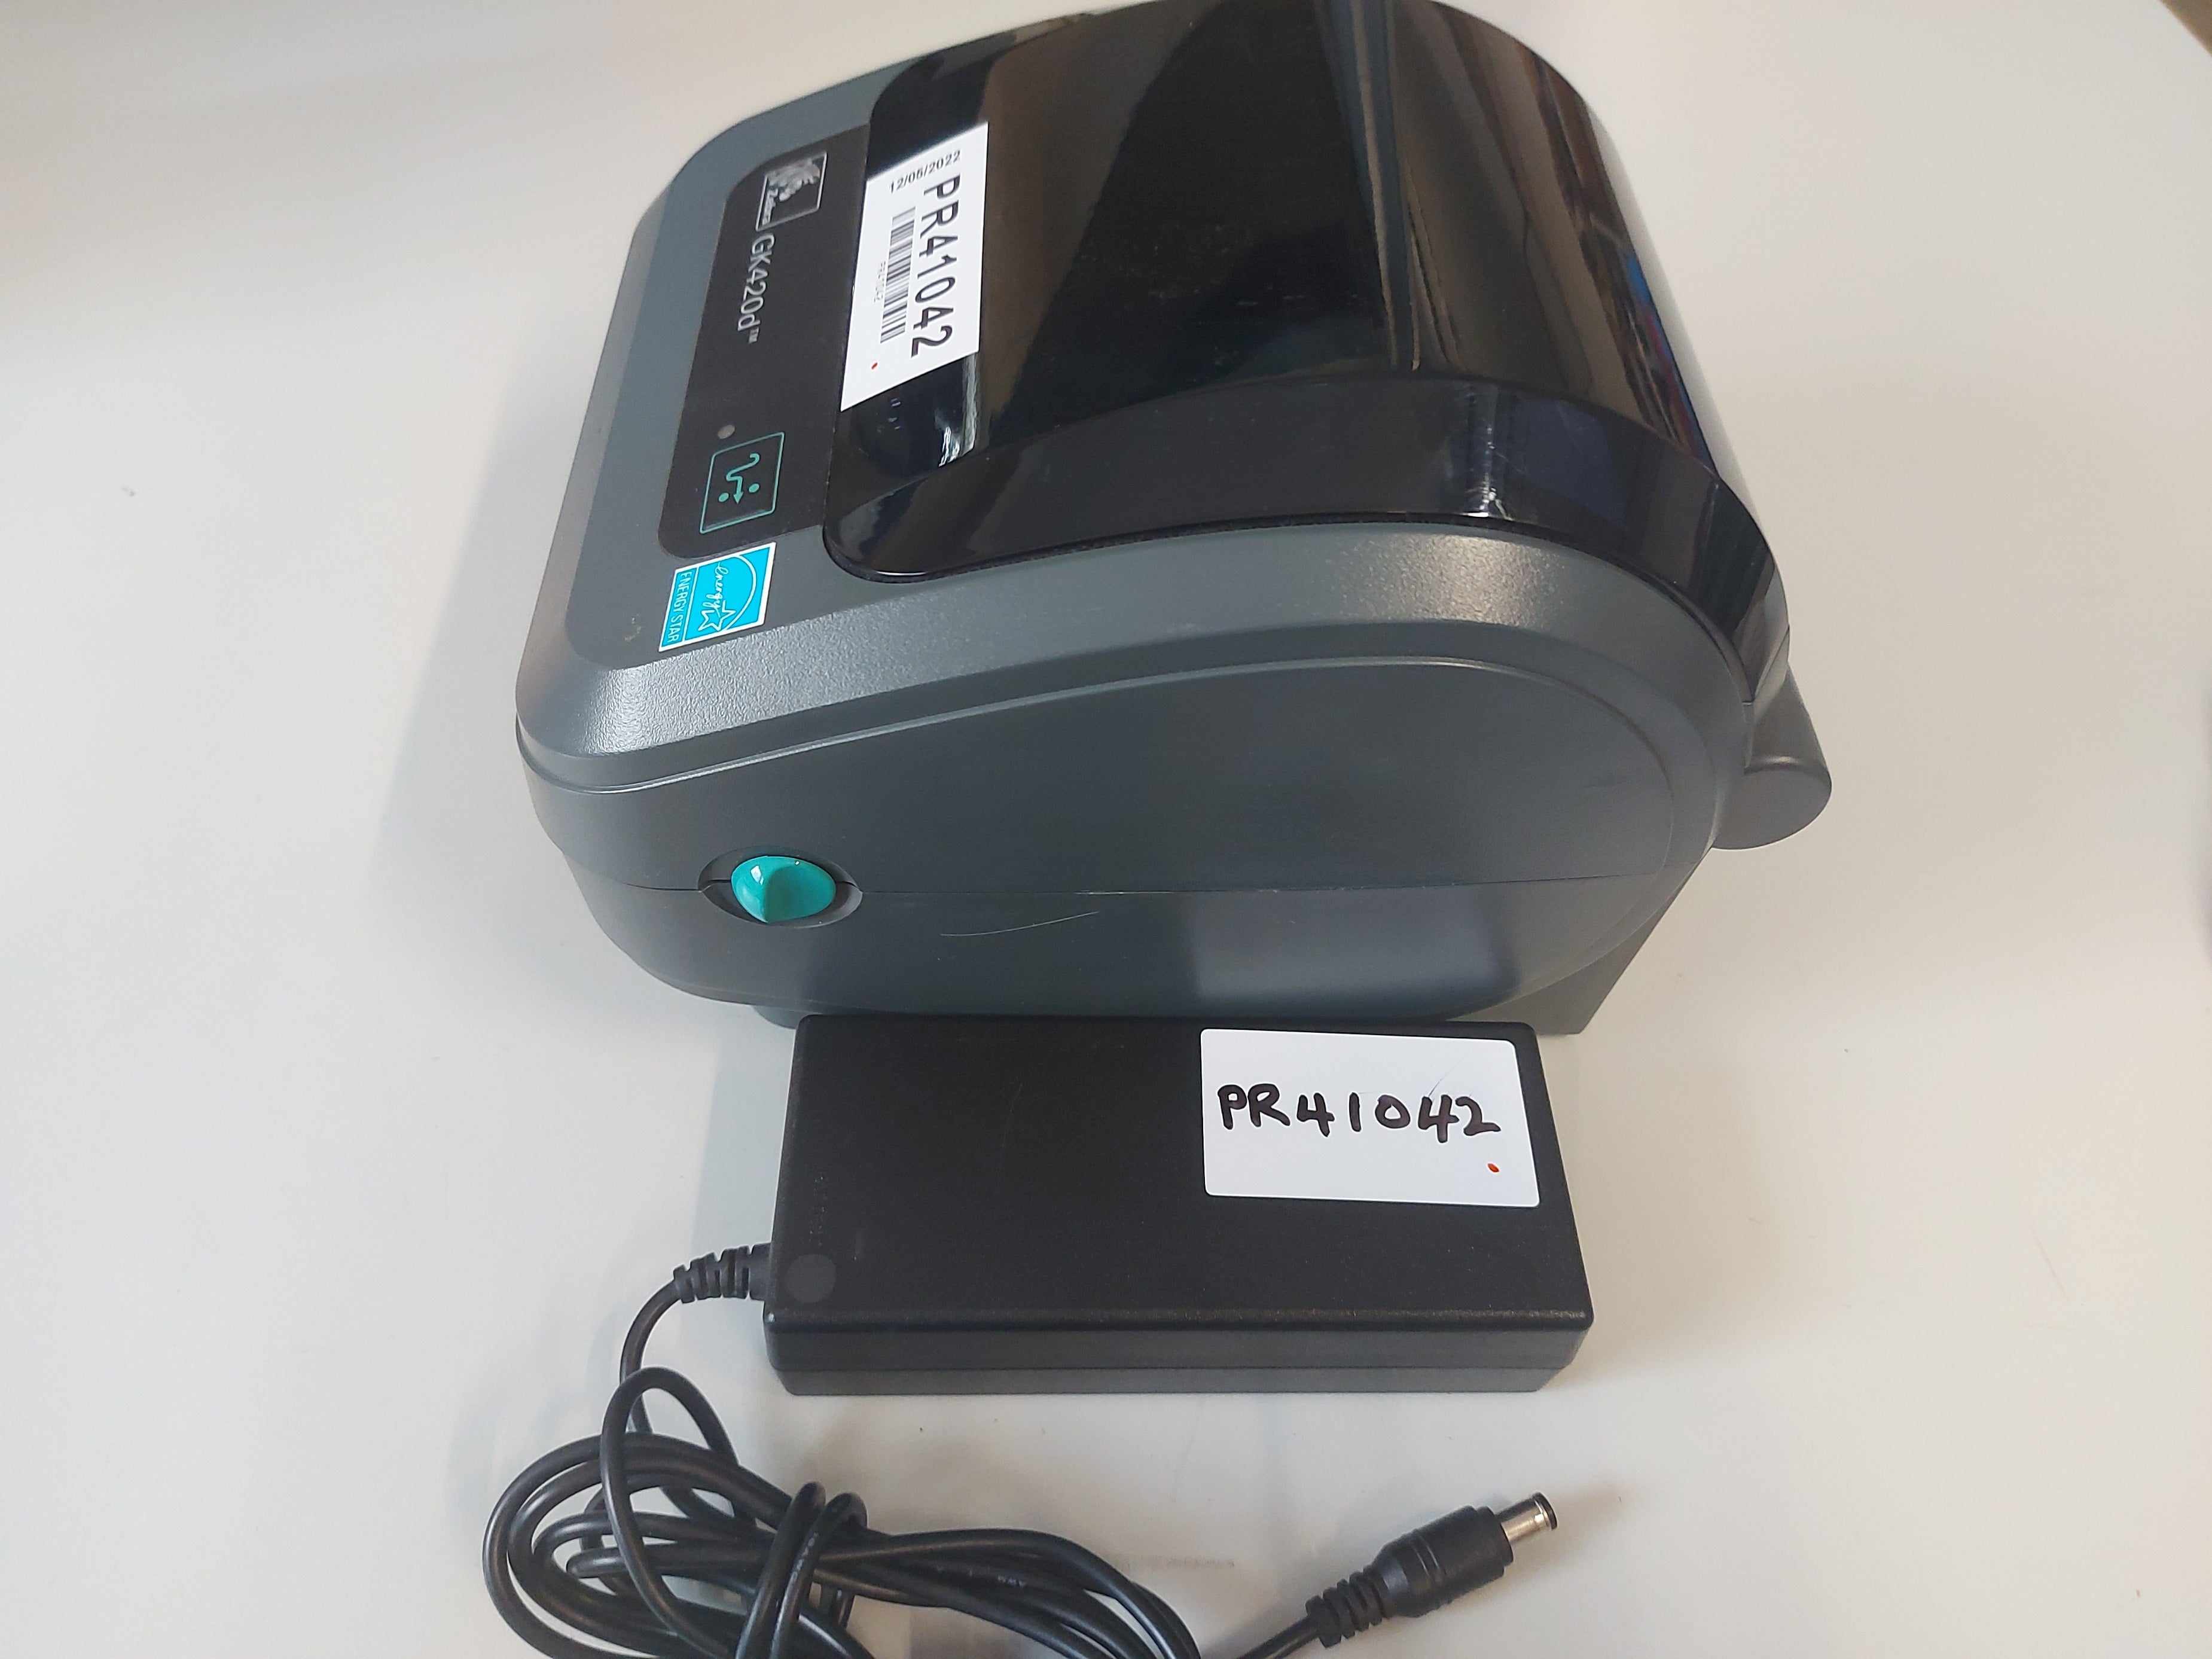 Zebra GK420d Thermal Label printer ( GK42-202220-000 ) USED